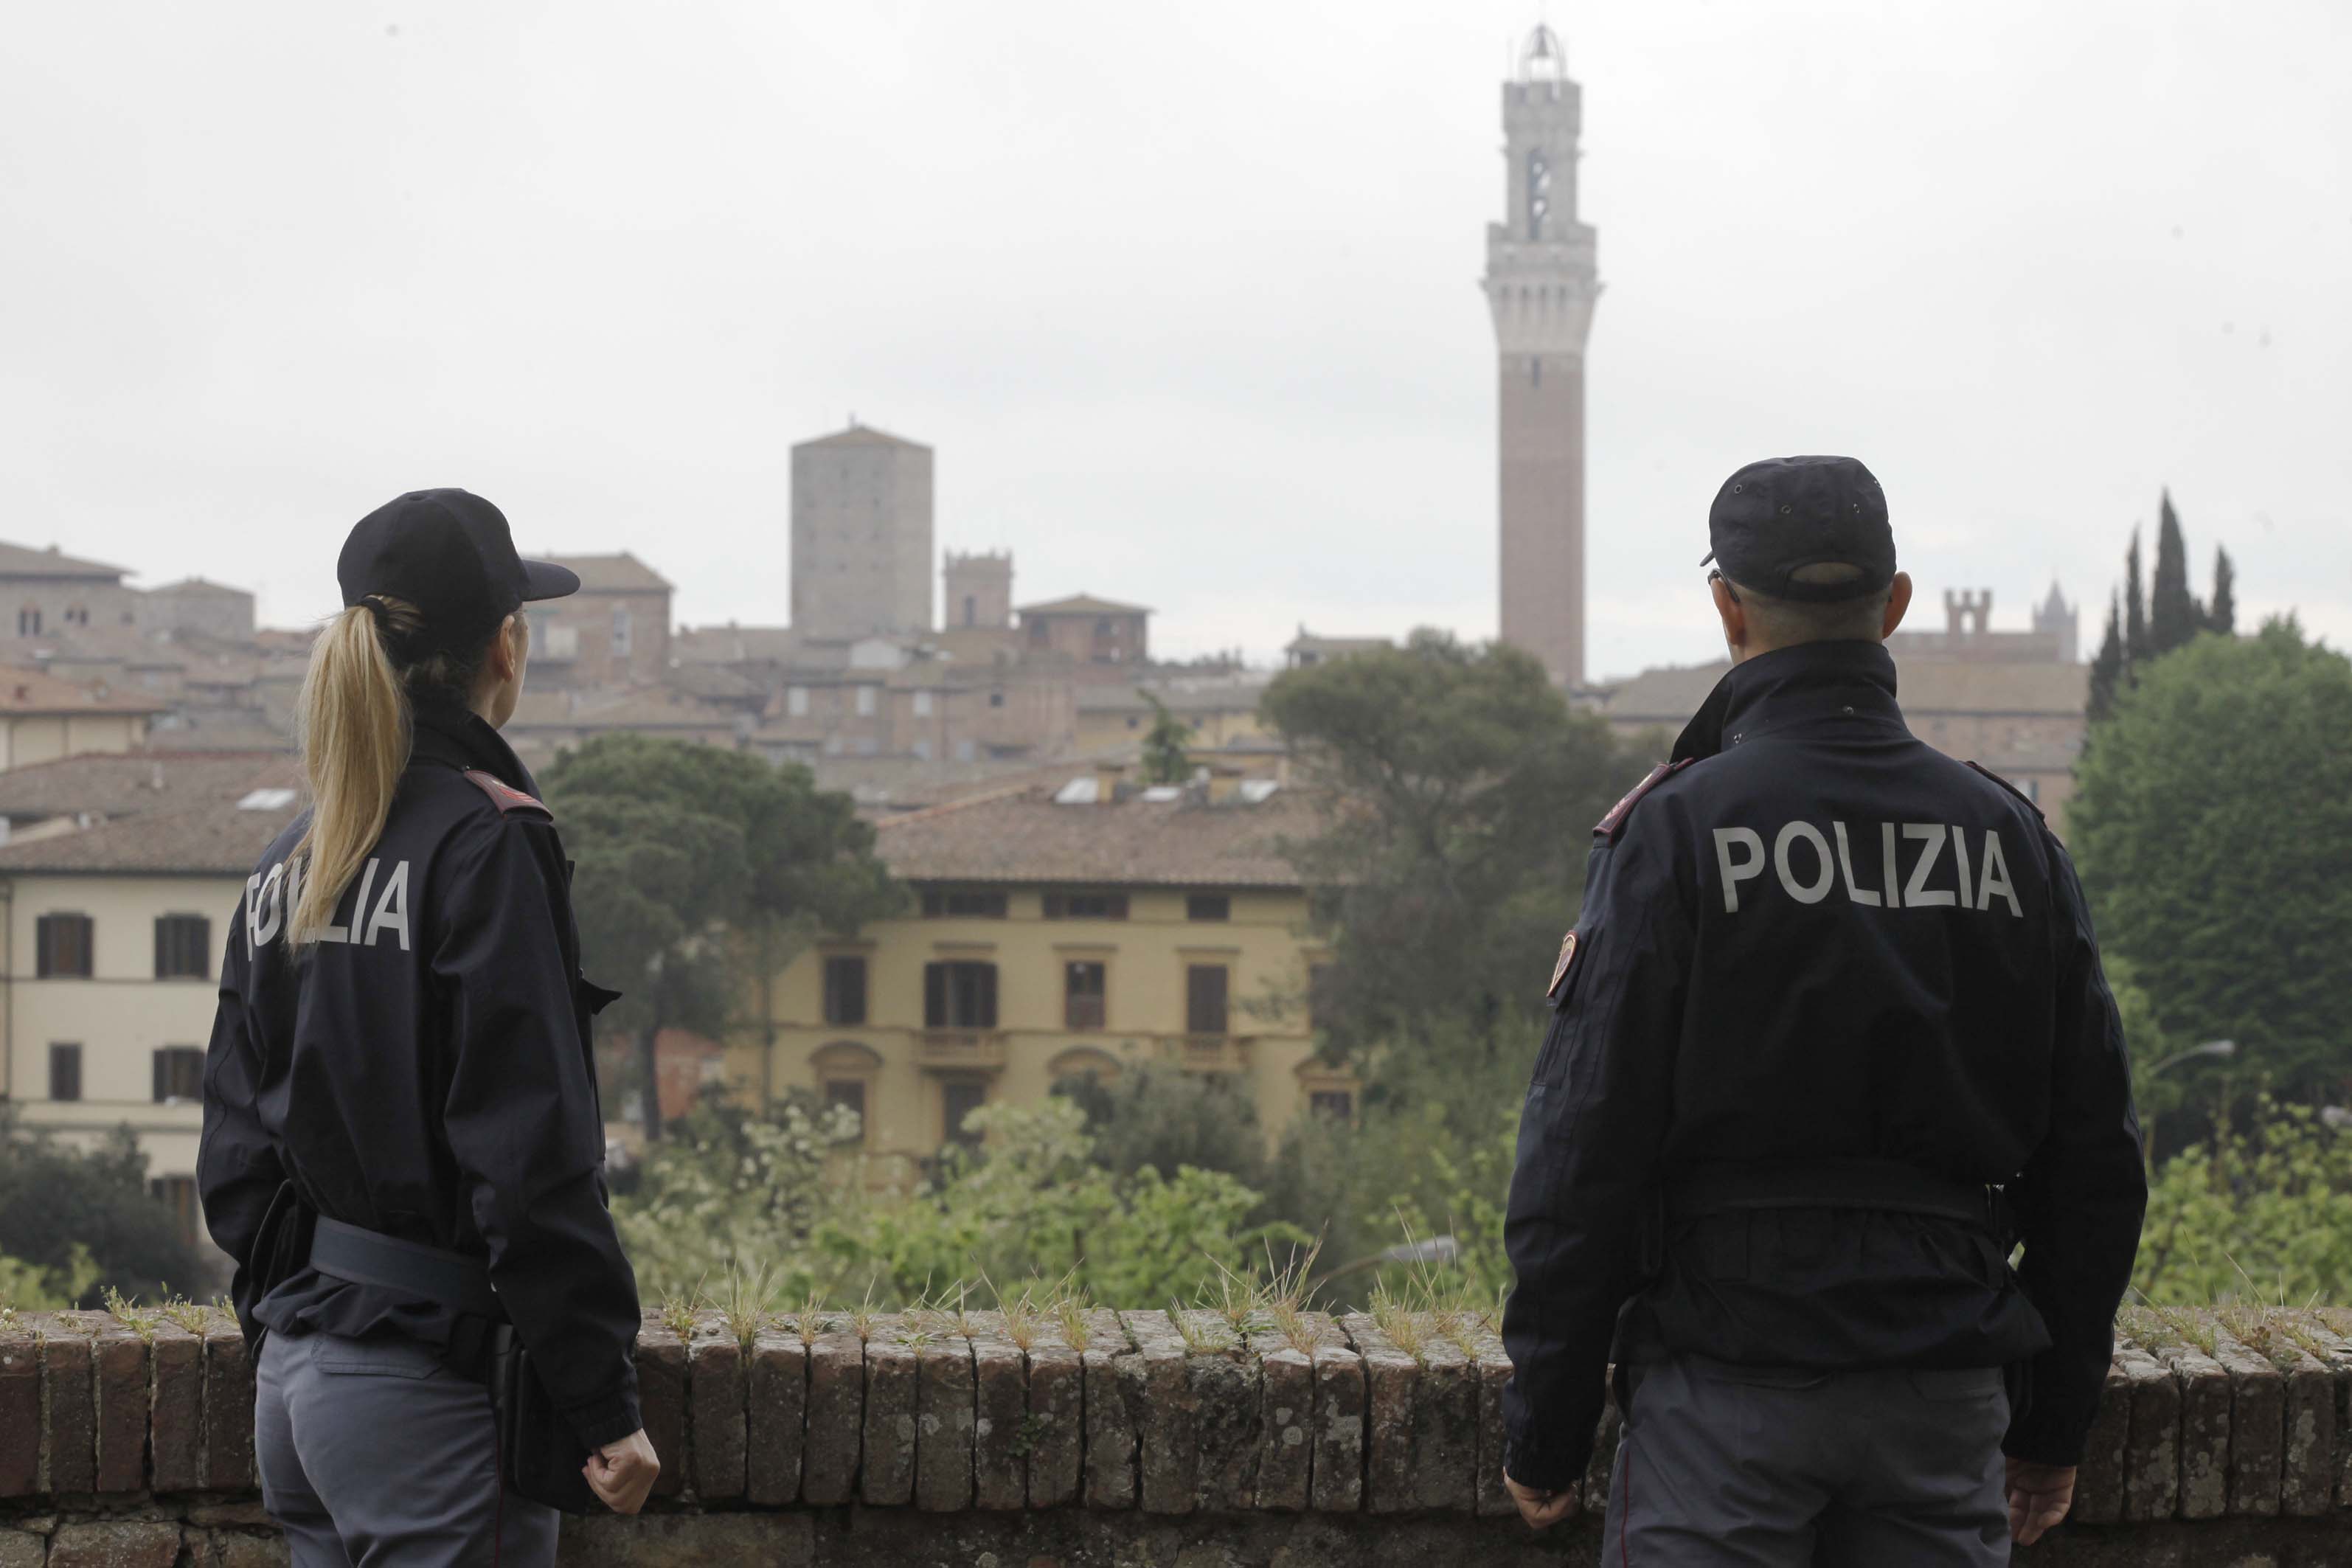 Polizia Siena